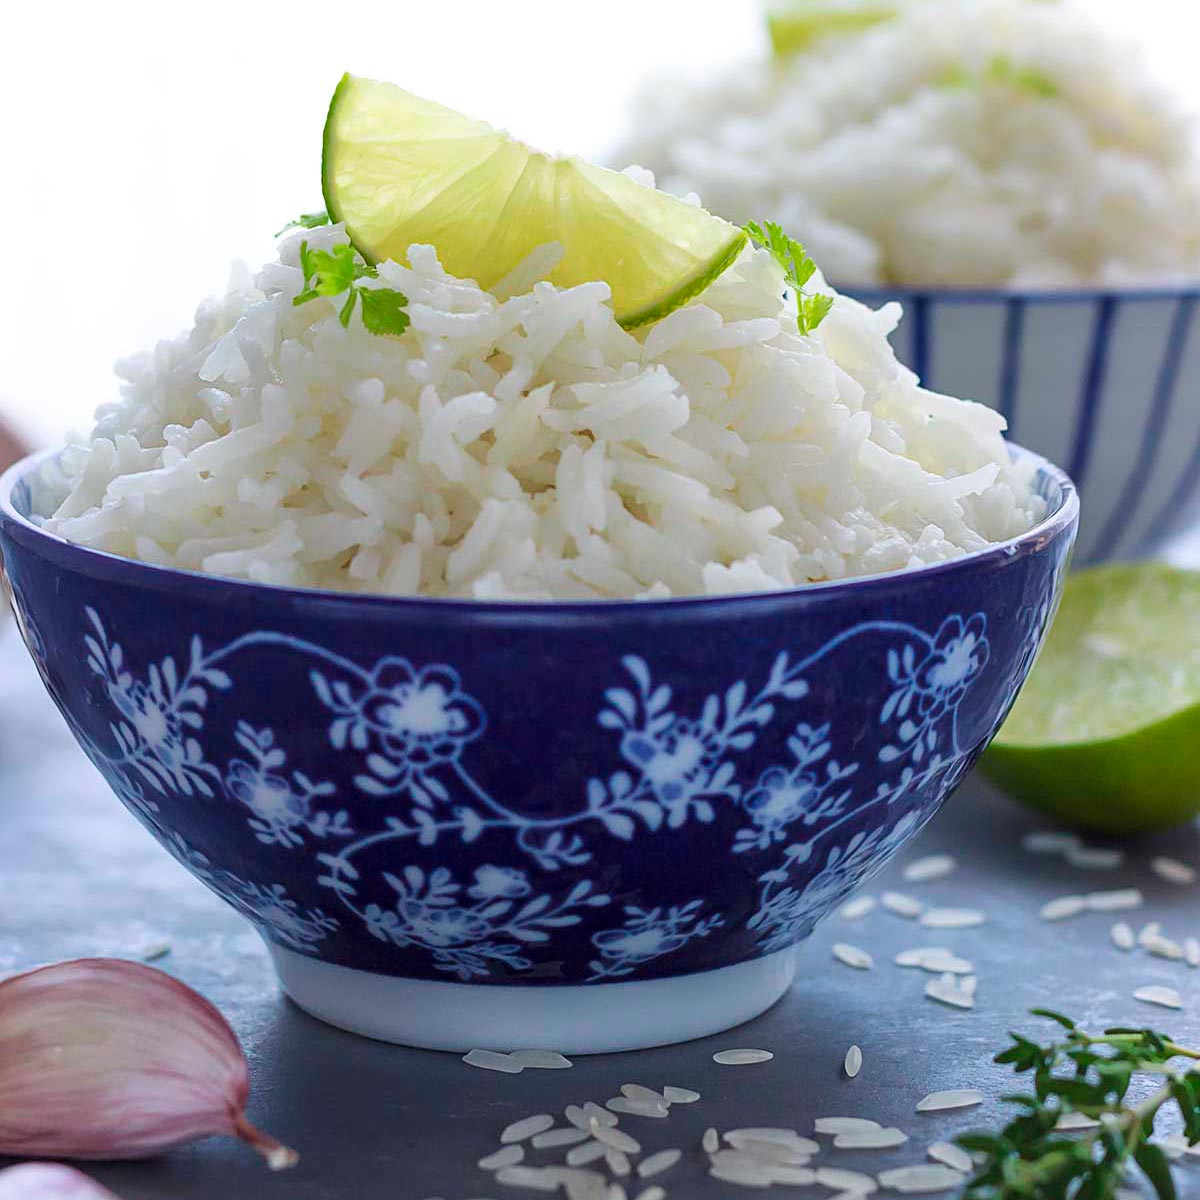 cocer arroz basmati